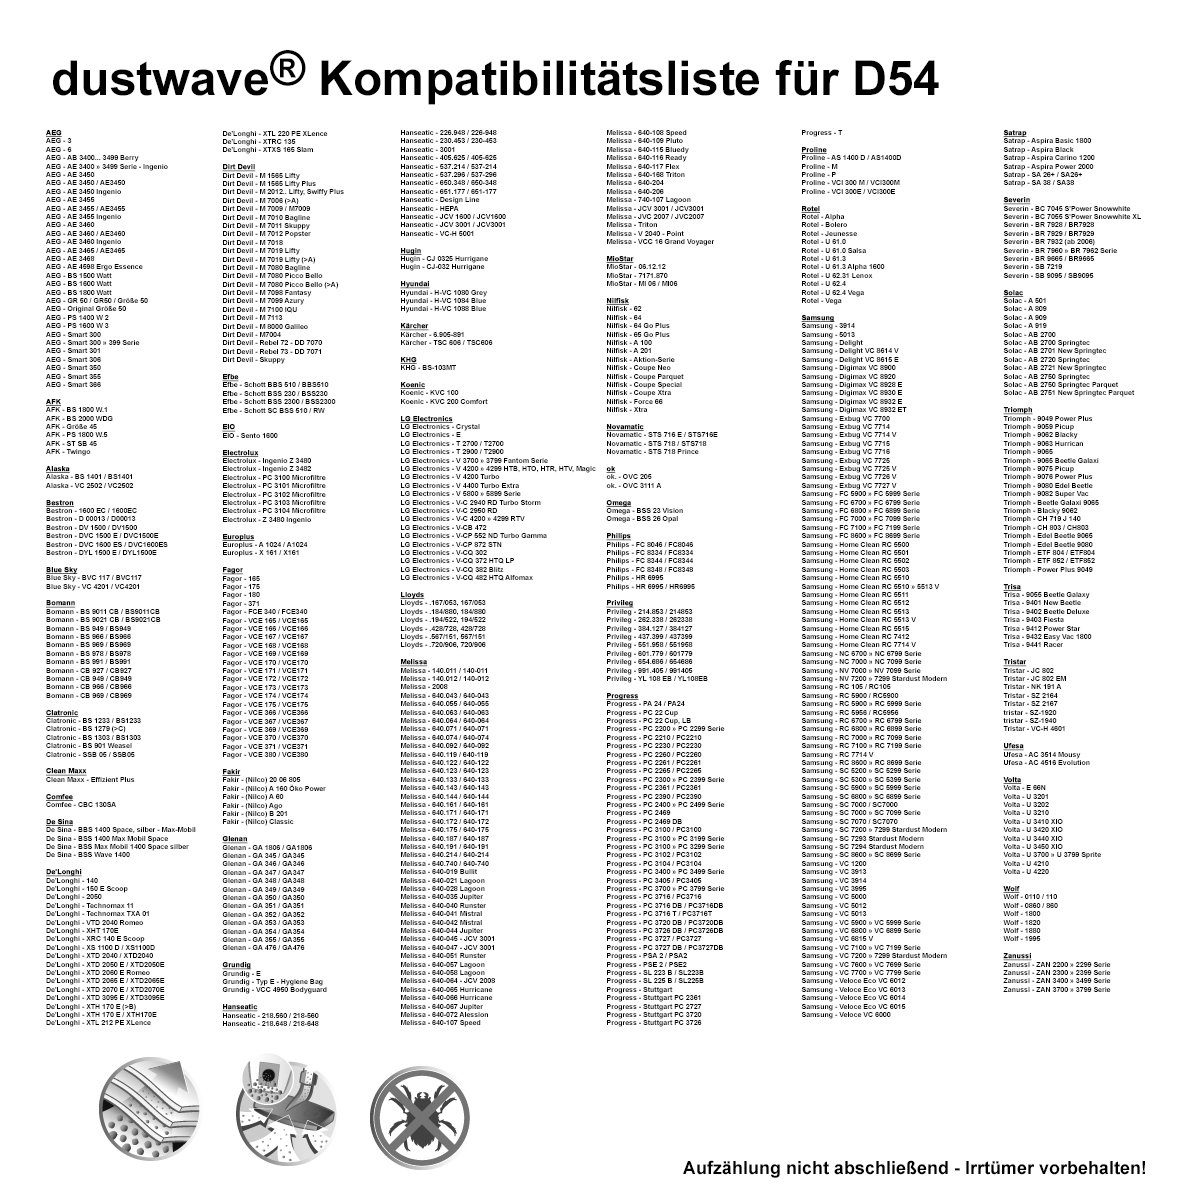 DYL1500E, + zuschneidbar) Staubsaugerbeutel passend Test-Set, / Staubsaugerbeutel Test-Set, 15x15cm E Hepa-Filter (ca. 1500 1 DYL Dustwave - 1 für 1 St., Bestron